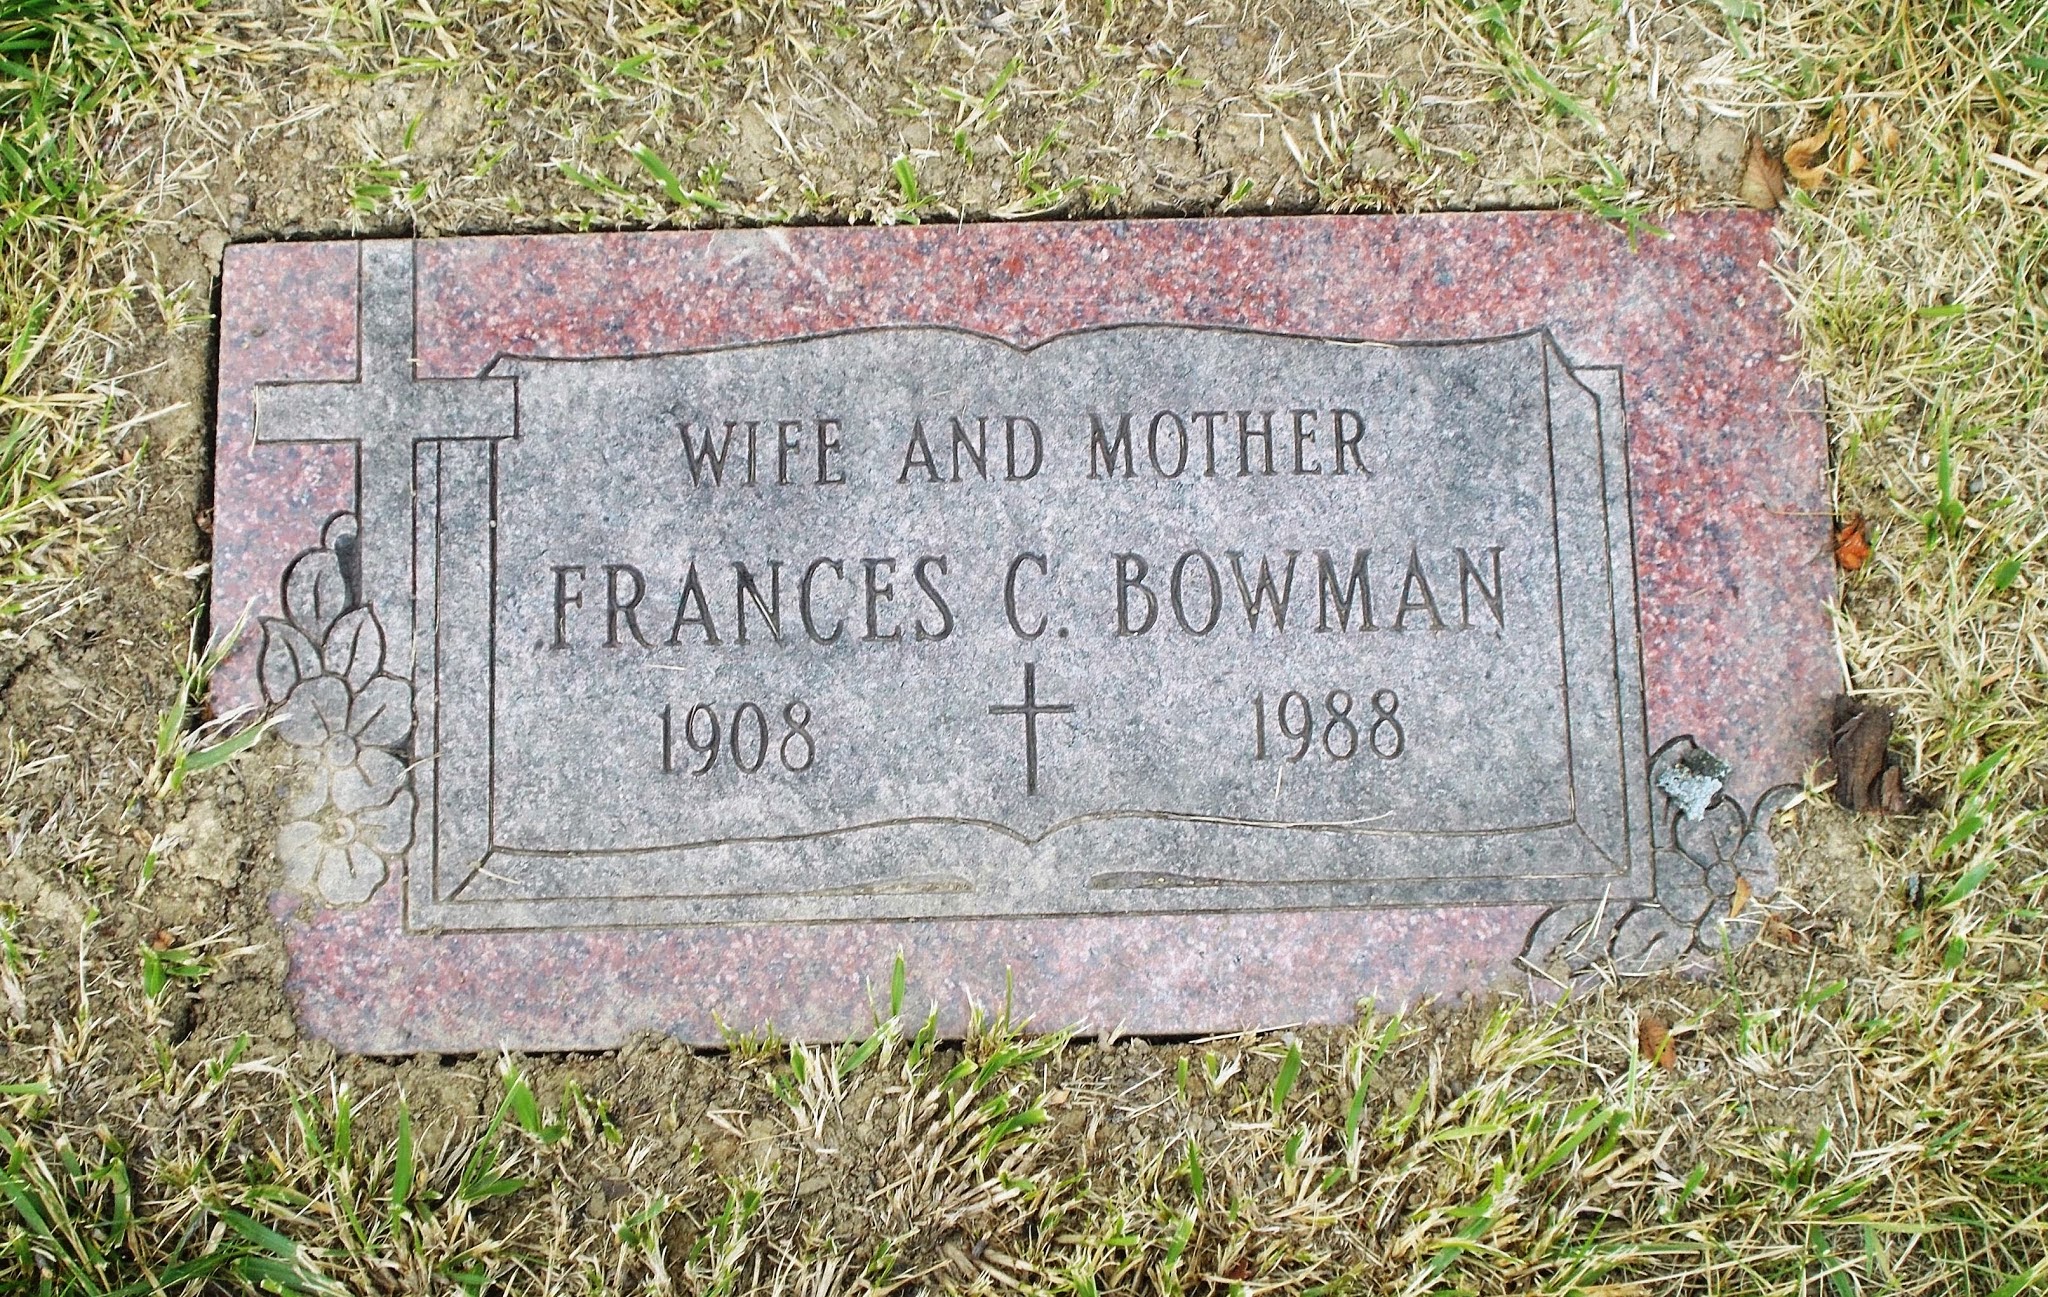 Frances C Bowman